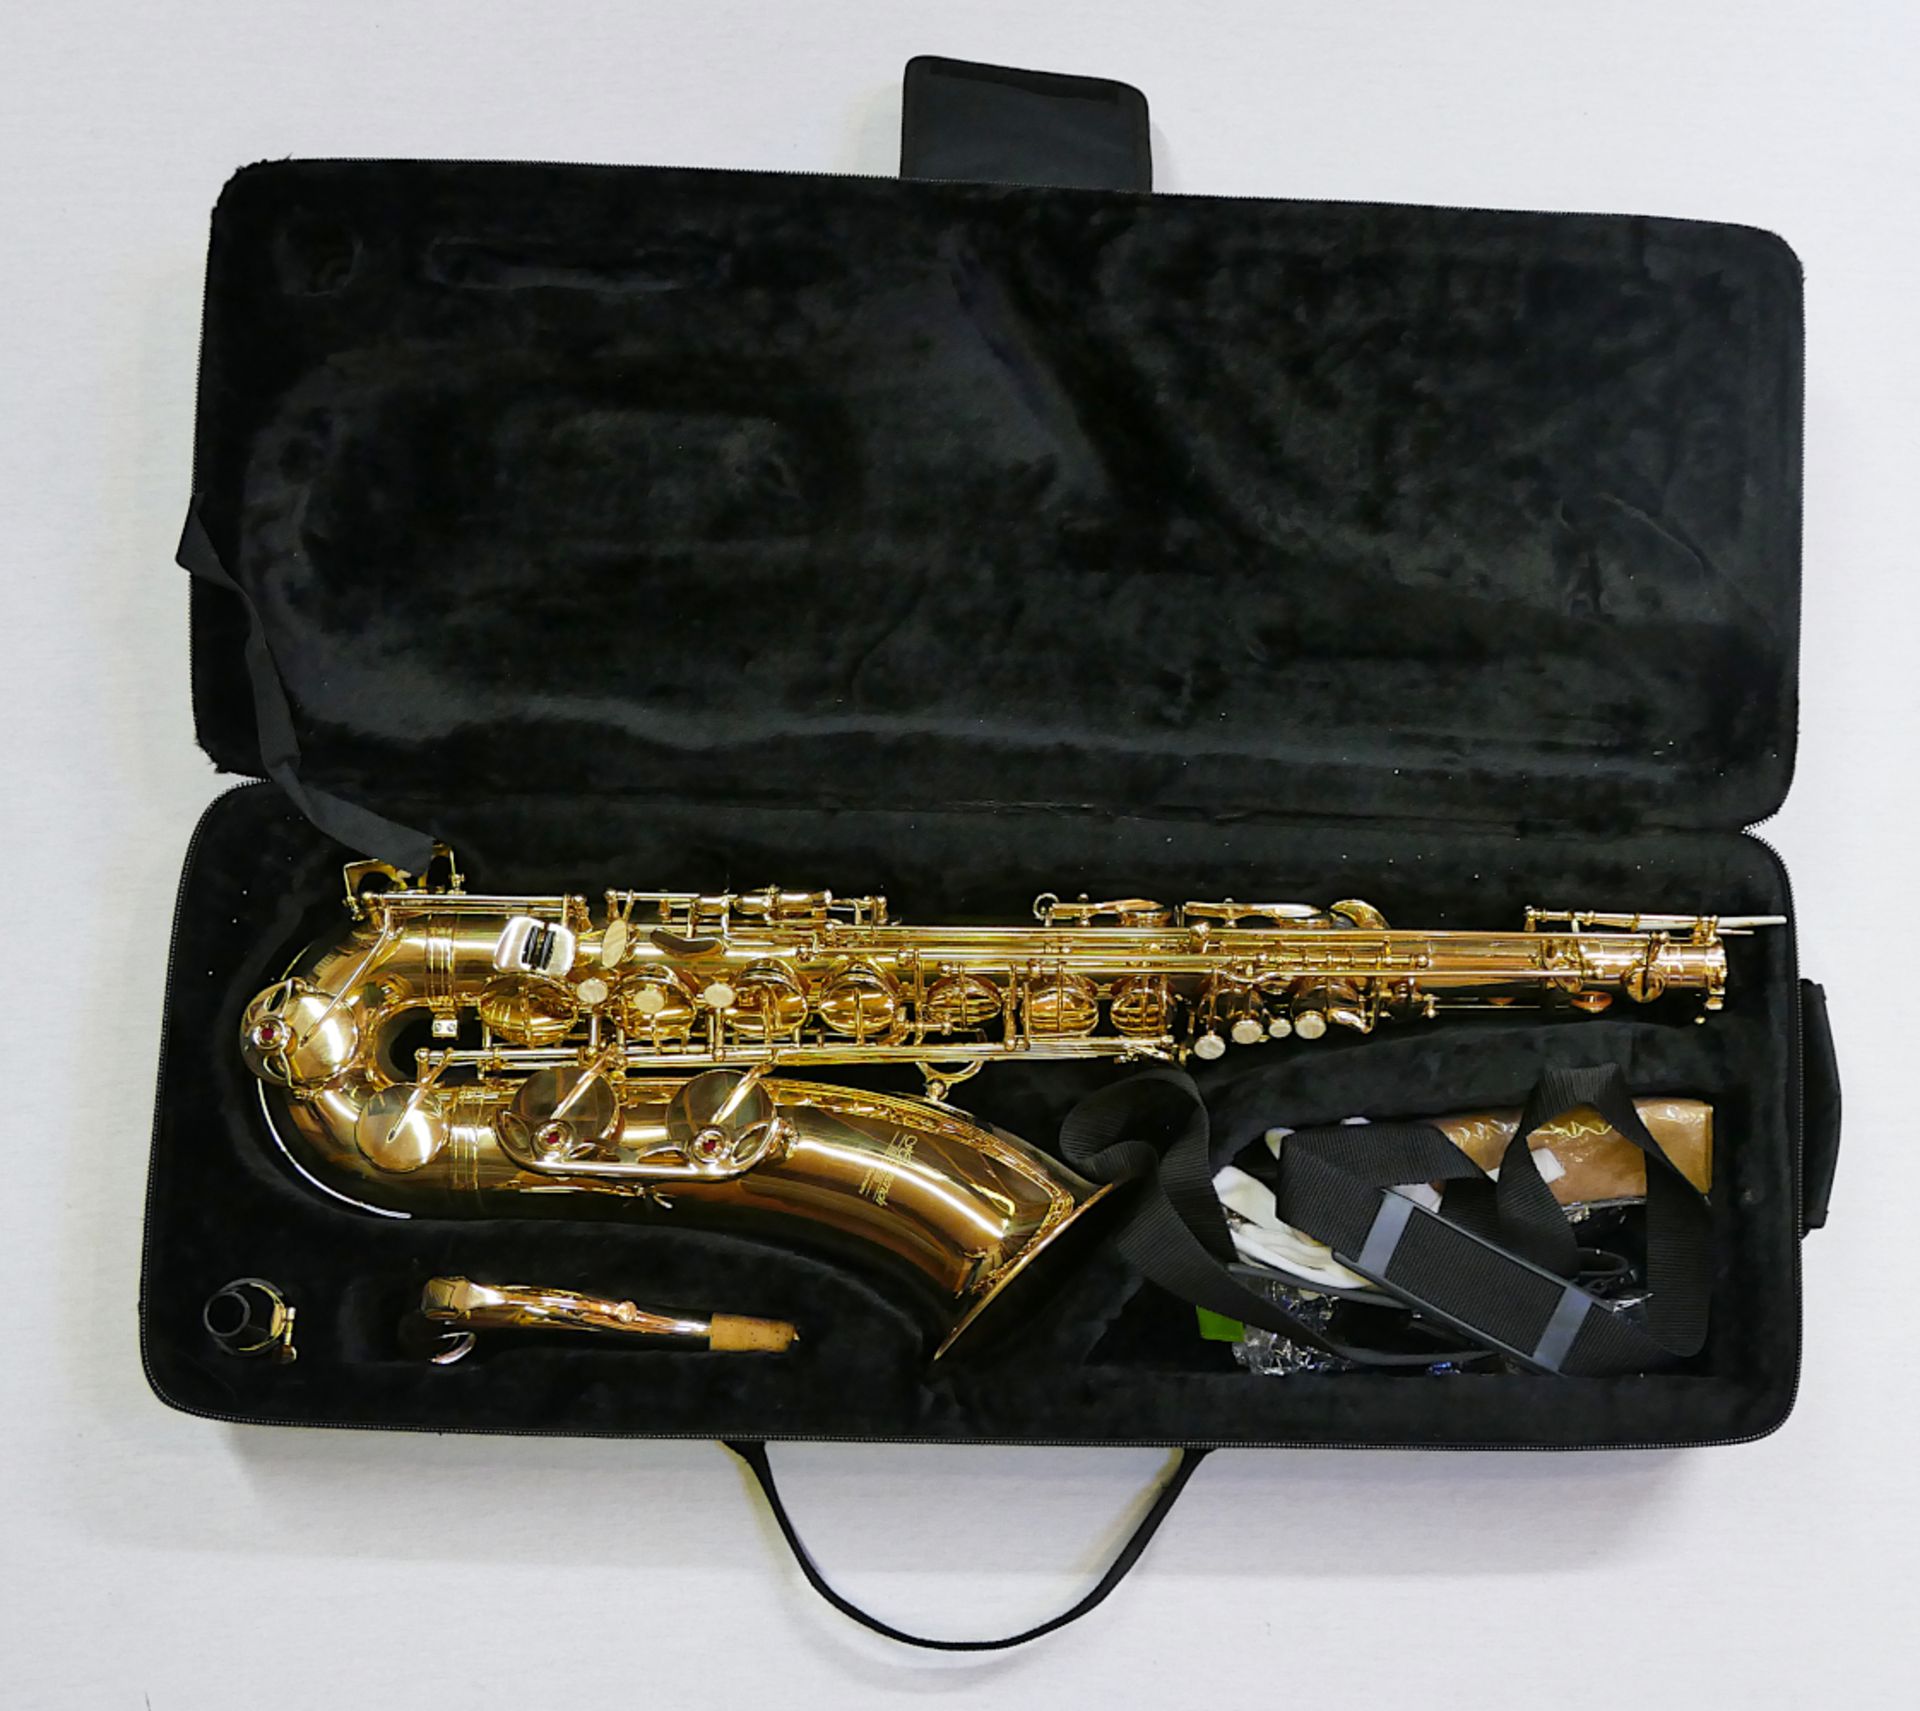 3 Musikinstrumente: 1 Saxophon bez. HOMMERICH "HS-900B" im Kasten mit Zubehör,1 Trompete MIRAPHONE